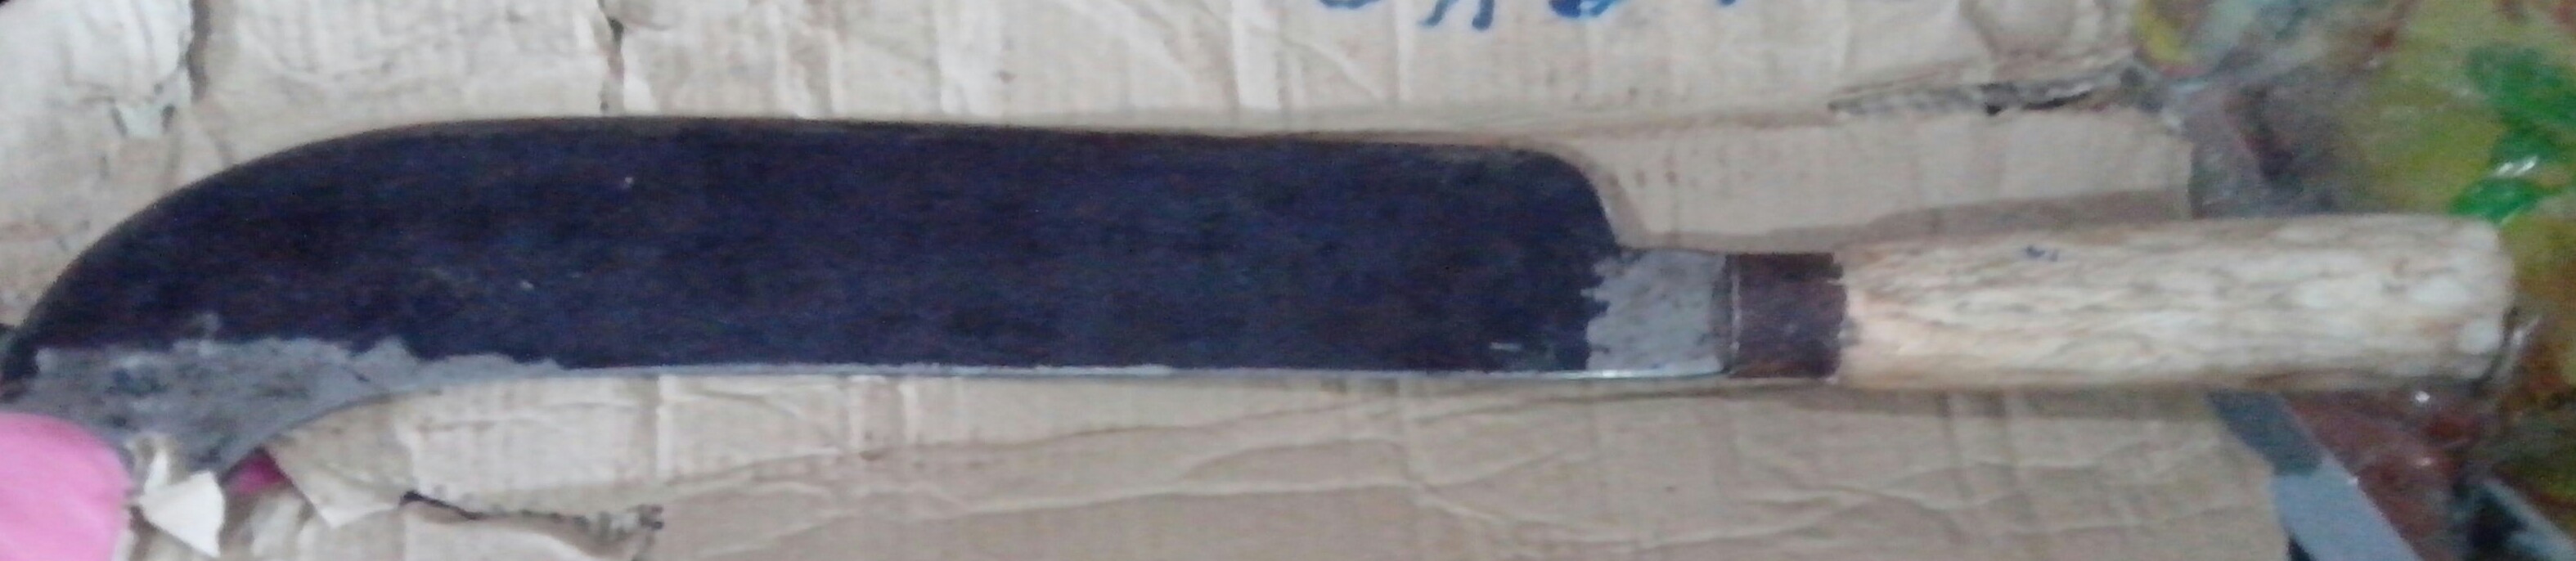 большой нож из Шри-Ланки в багаже